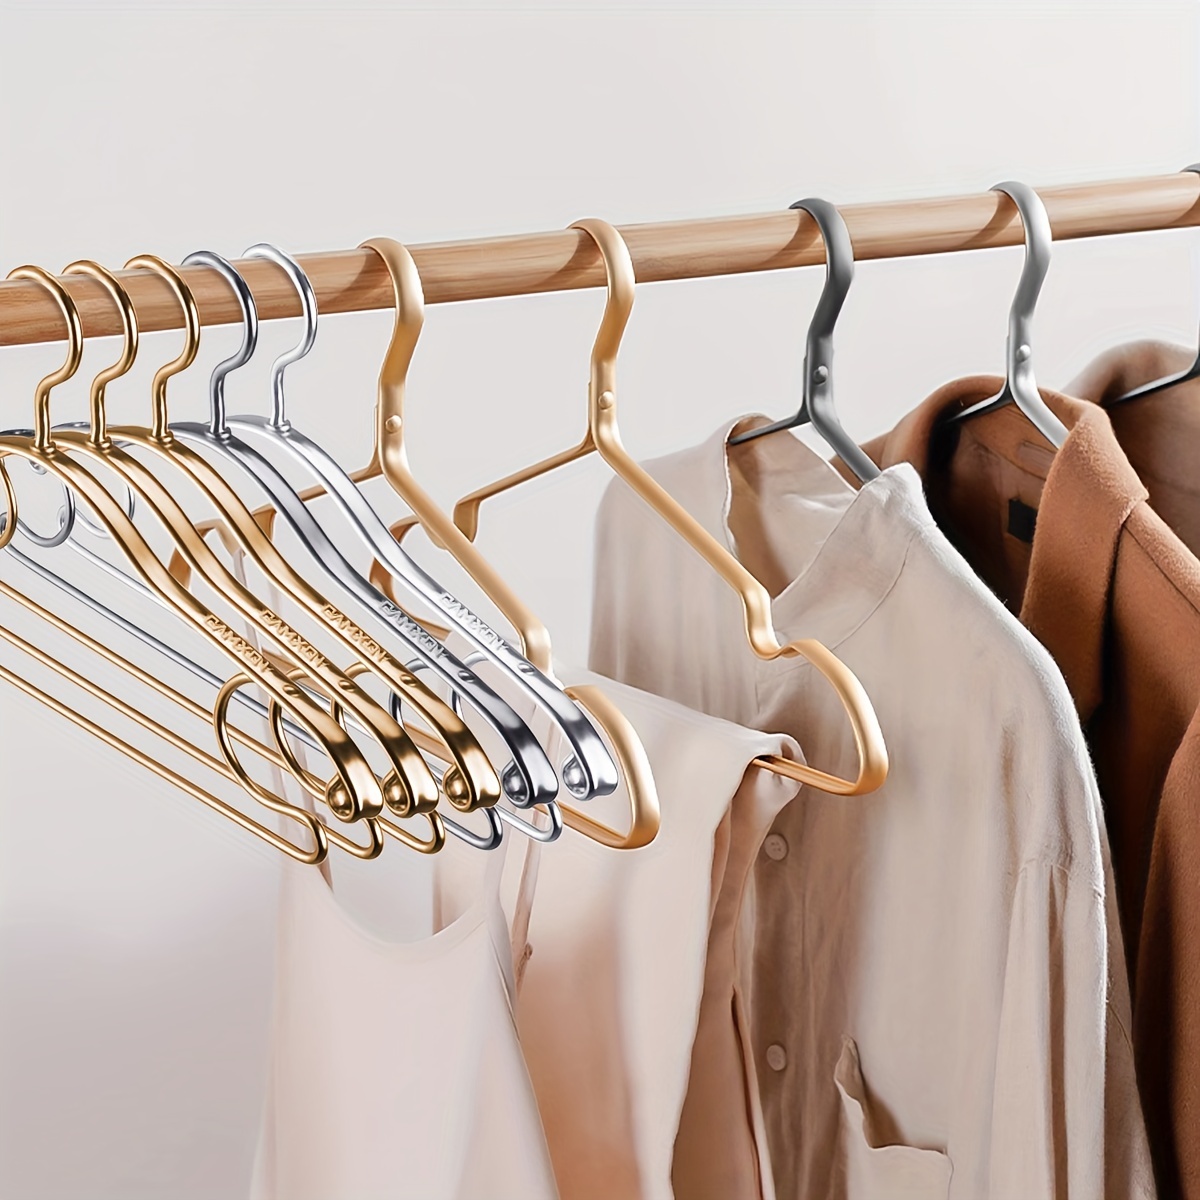 5Pcs Coat Hanger Non Slip Closet Organizer Heavy Duty Clothes Hanger Luxury  Dress Suit Hangers for Dress Shirts Ties Jeans Pants - AliExpress